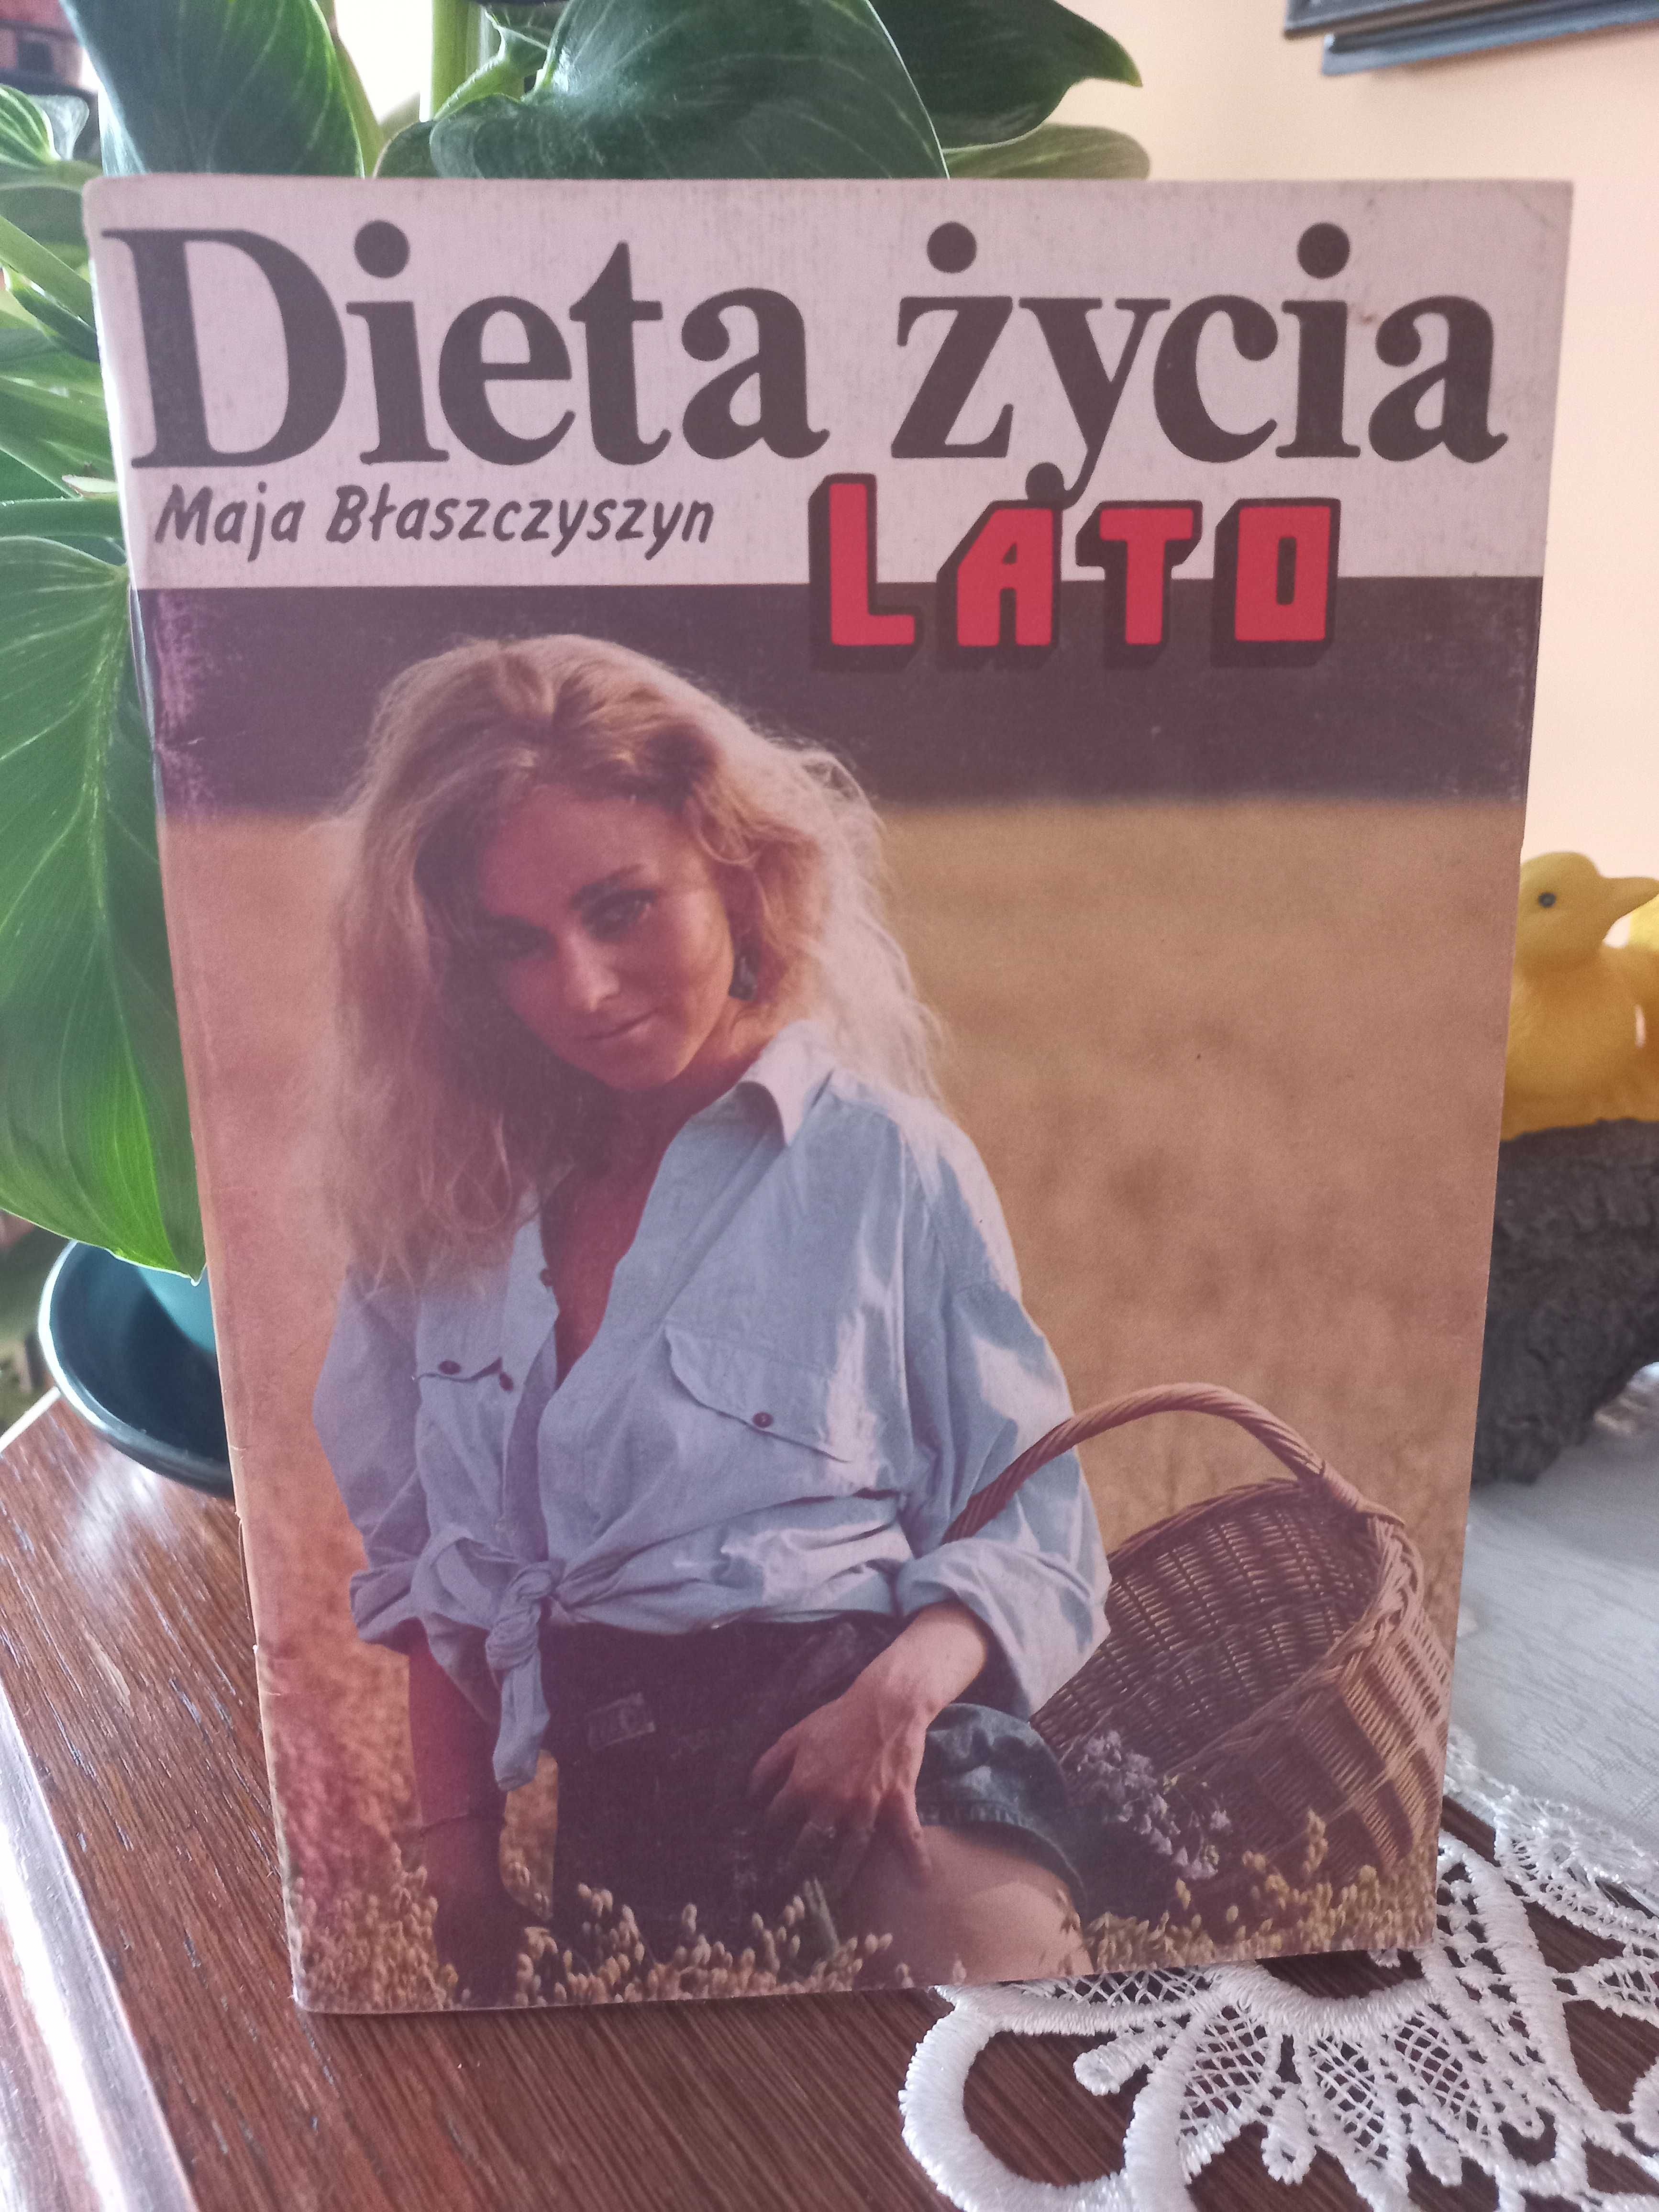 Dieta Życia - Lato - Maja Błaszczyszyn